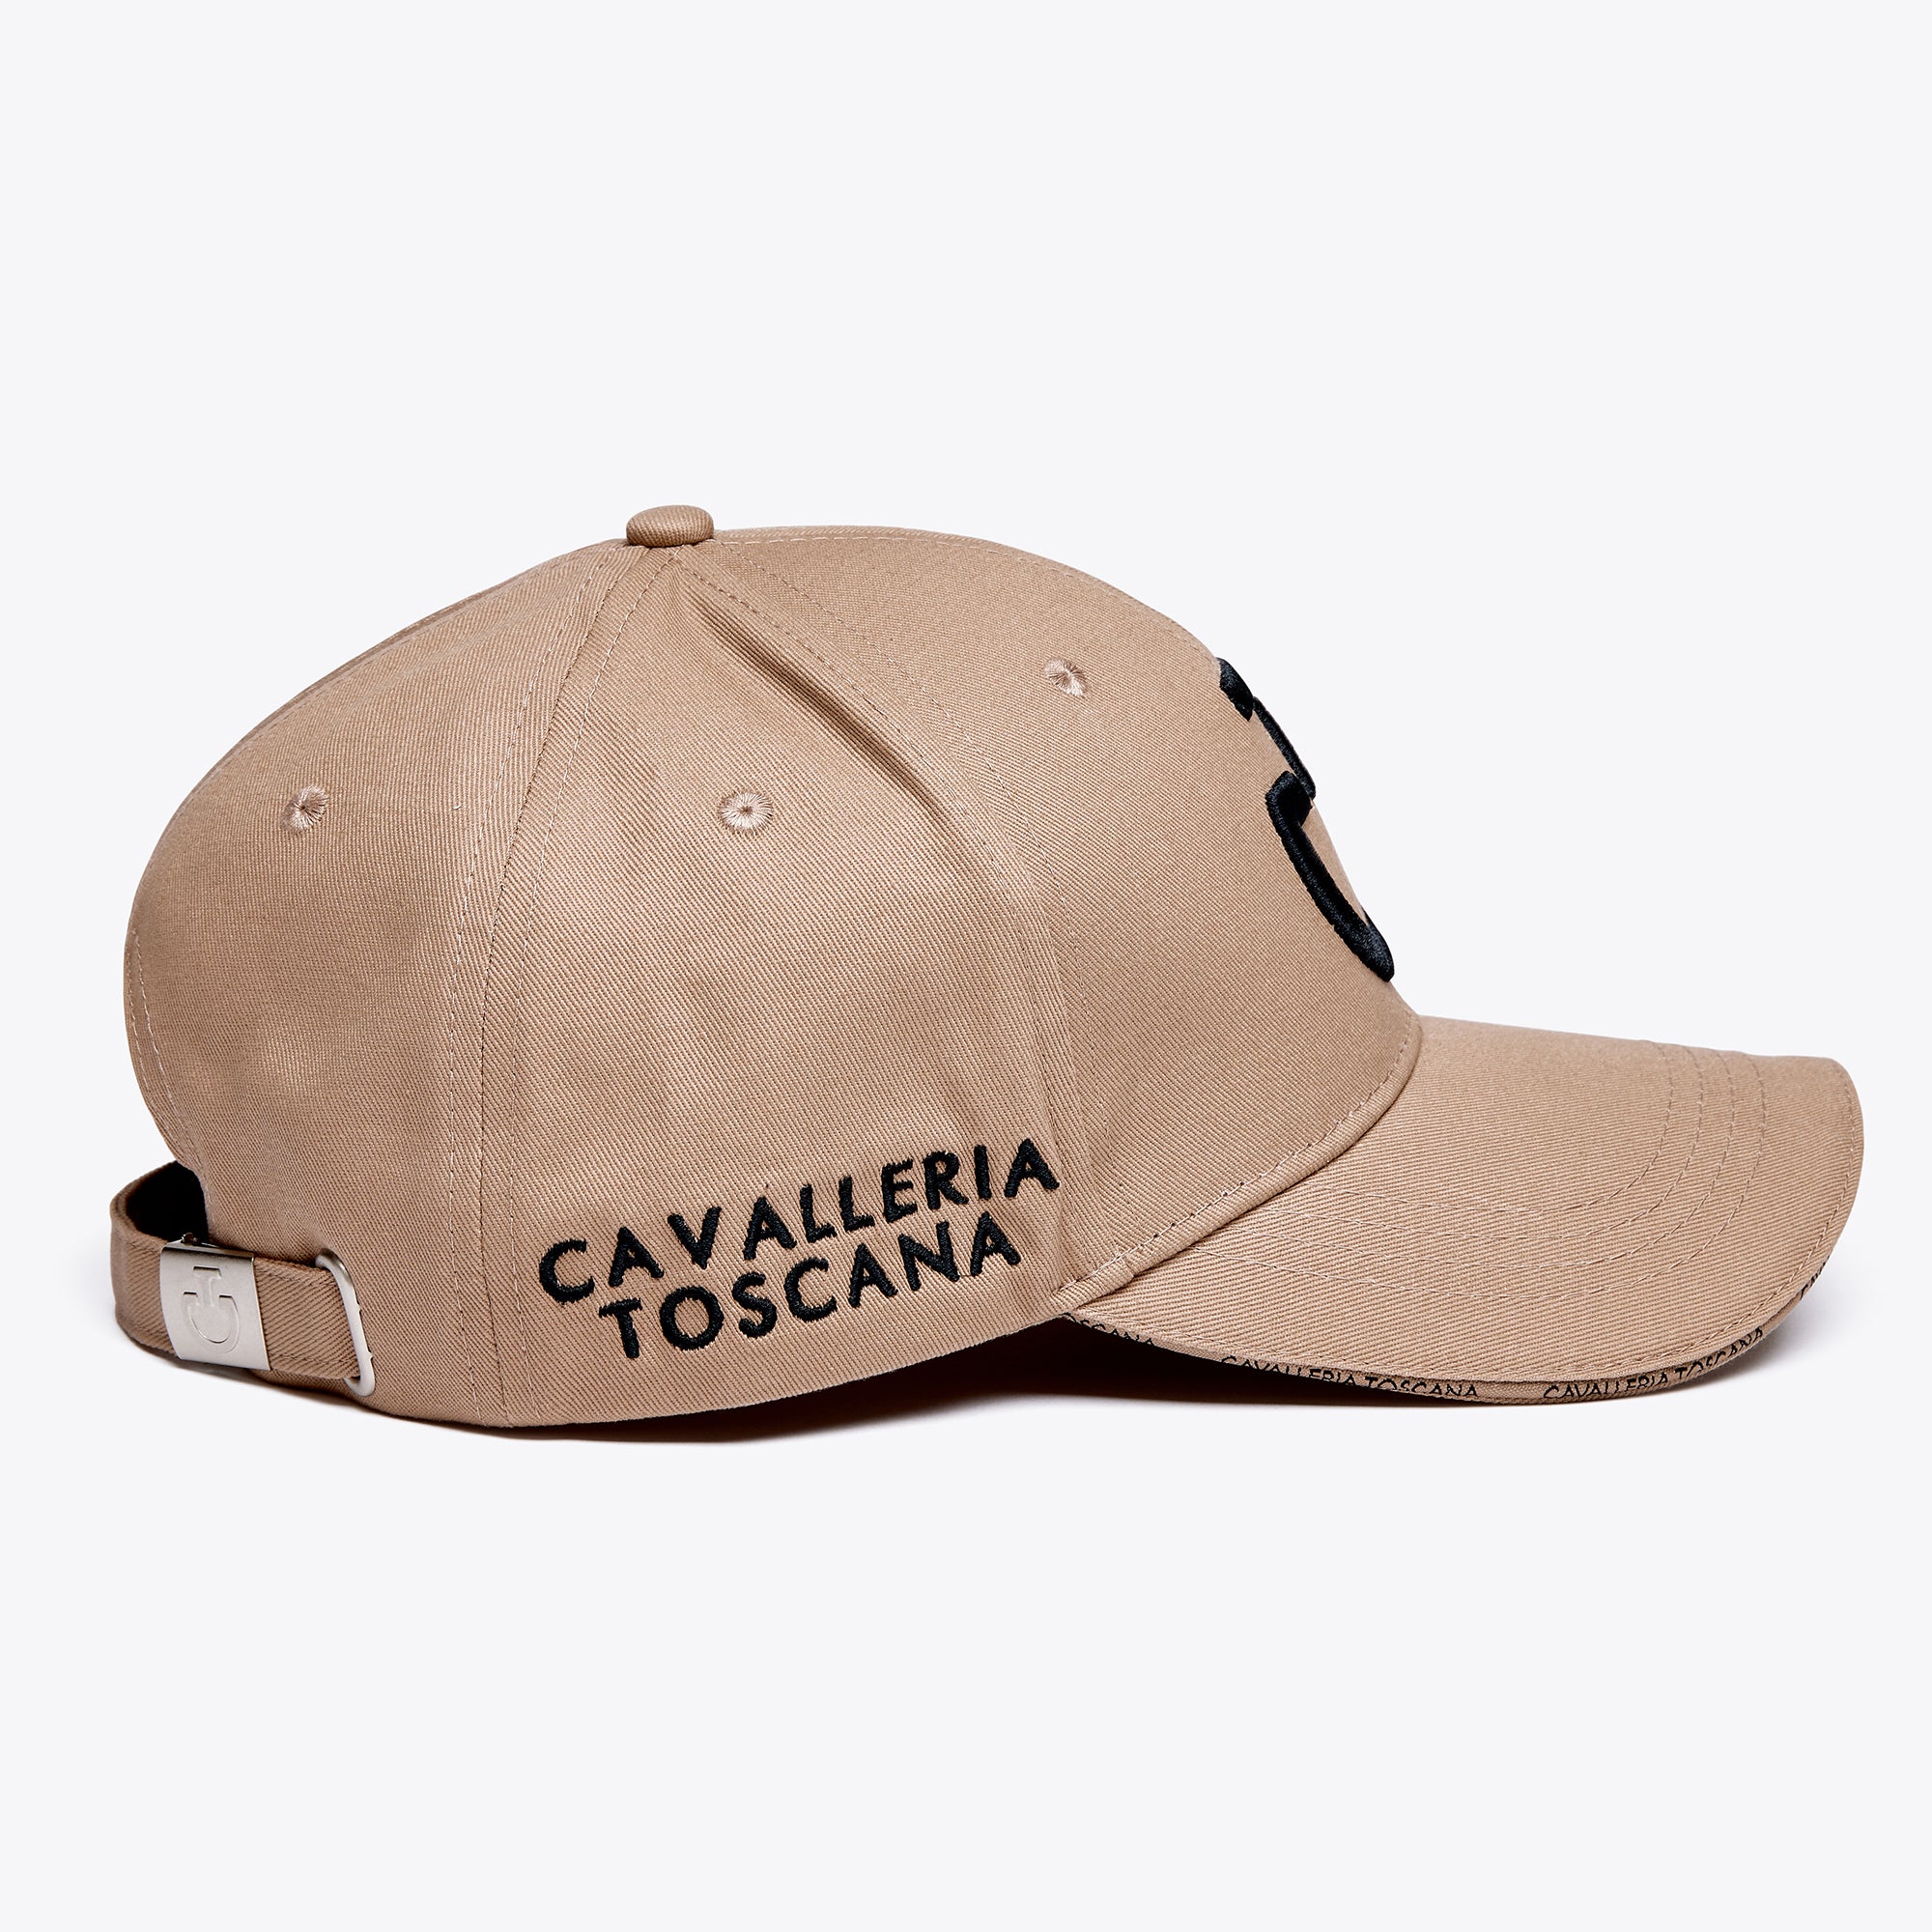 CAVALLERIA TOSCANA Cotton baseball cap